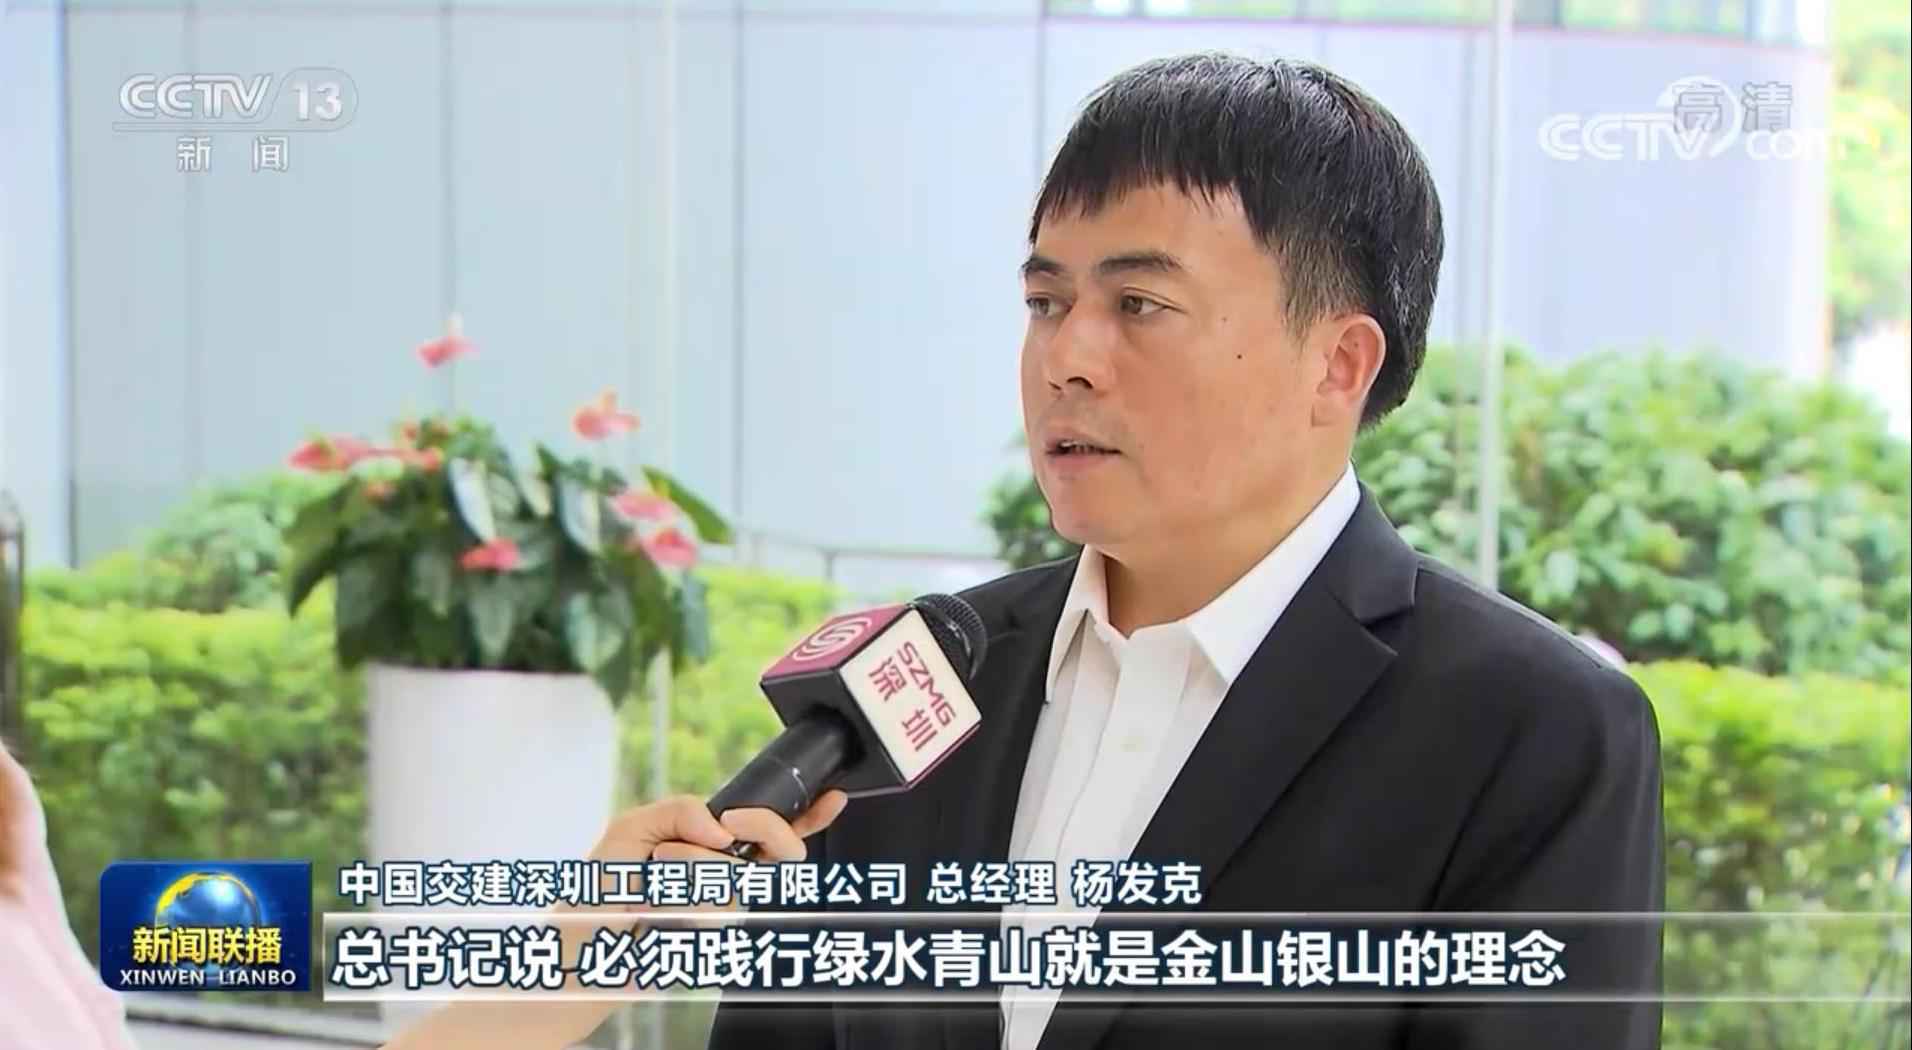 习近平总书记在深圳经济特区建立40周年庆祝大会上的重要讲话在各地引发热烈反响